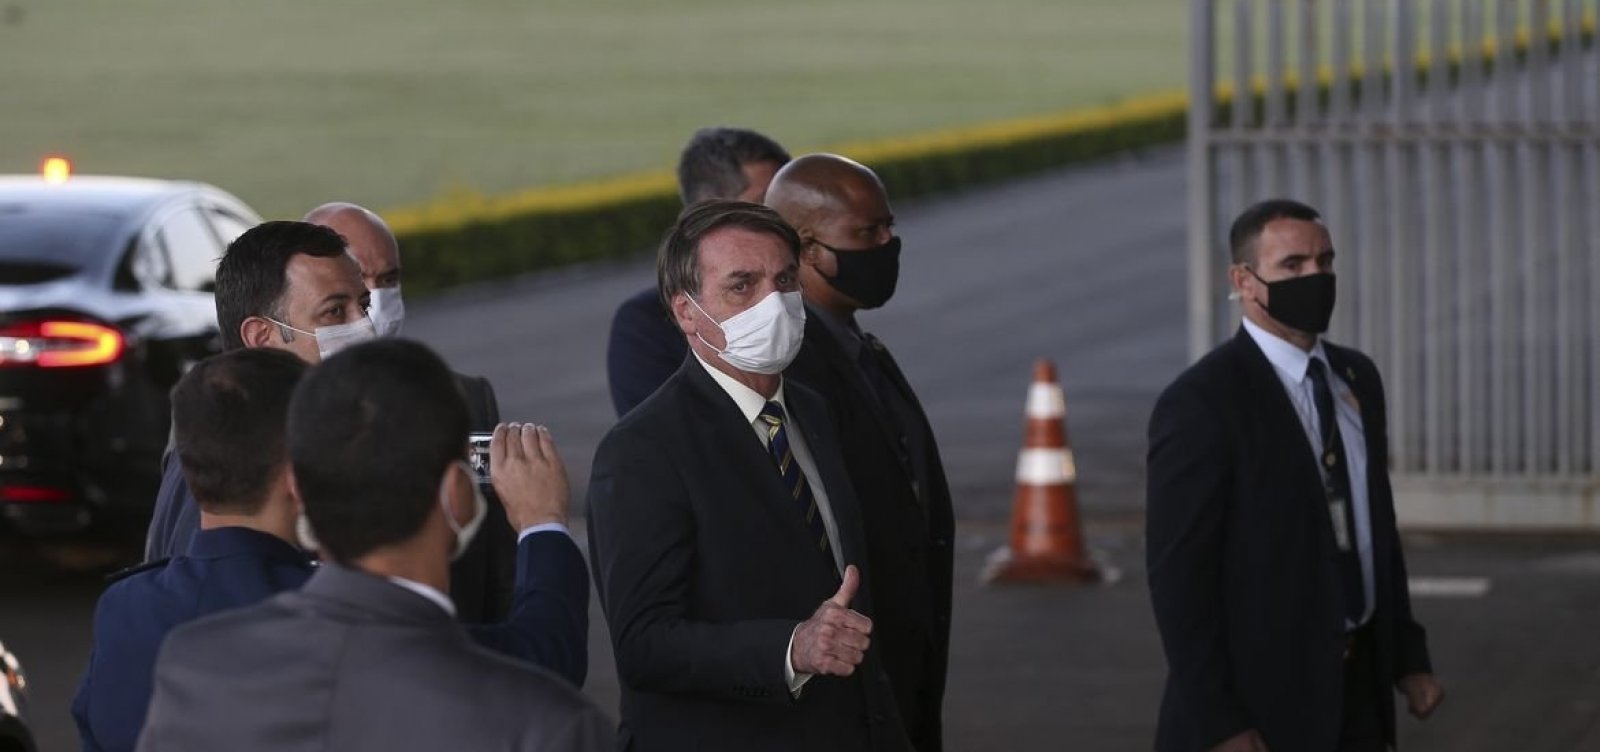 Pressionado, Bolsonaro questiona segurança das eleições e diz que Datafolha "recebe grana"